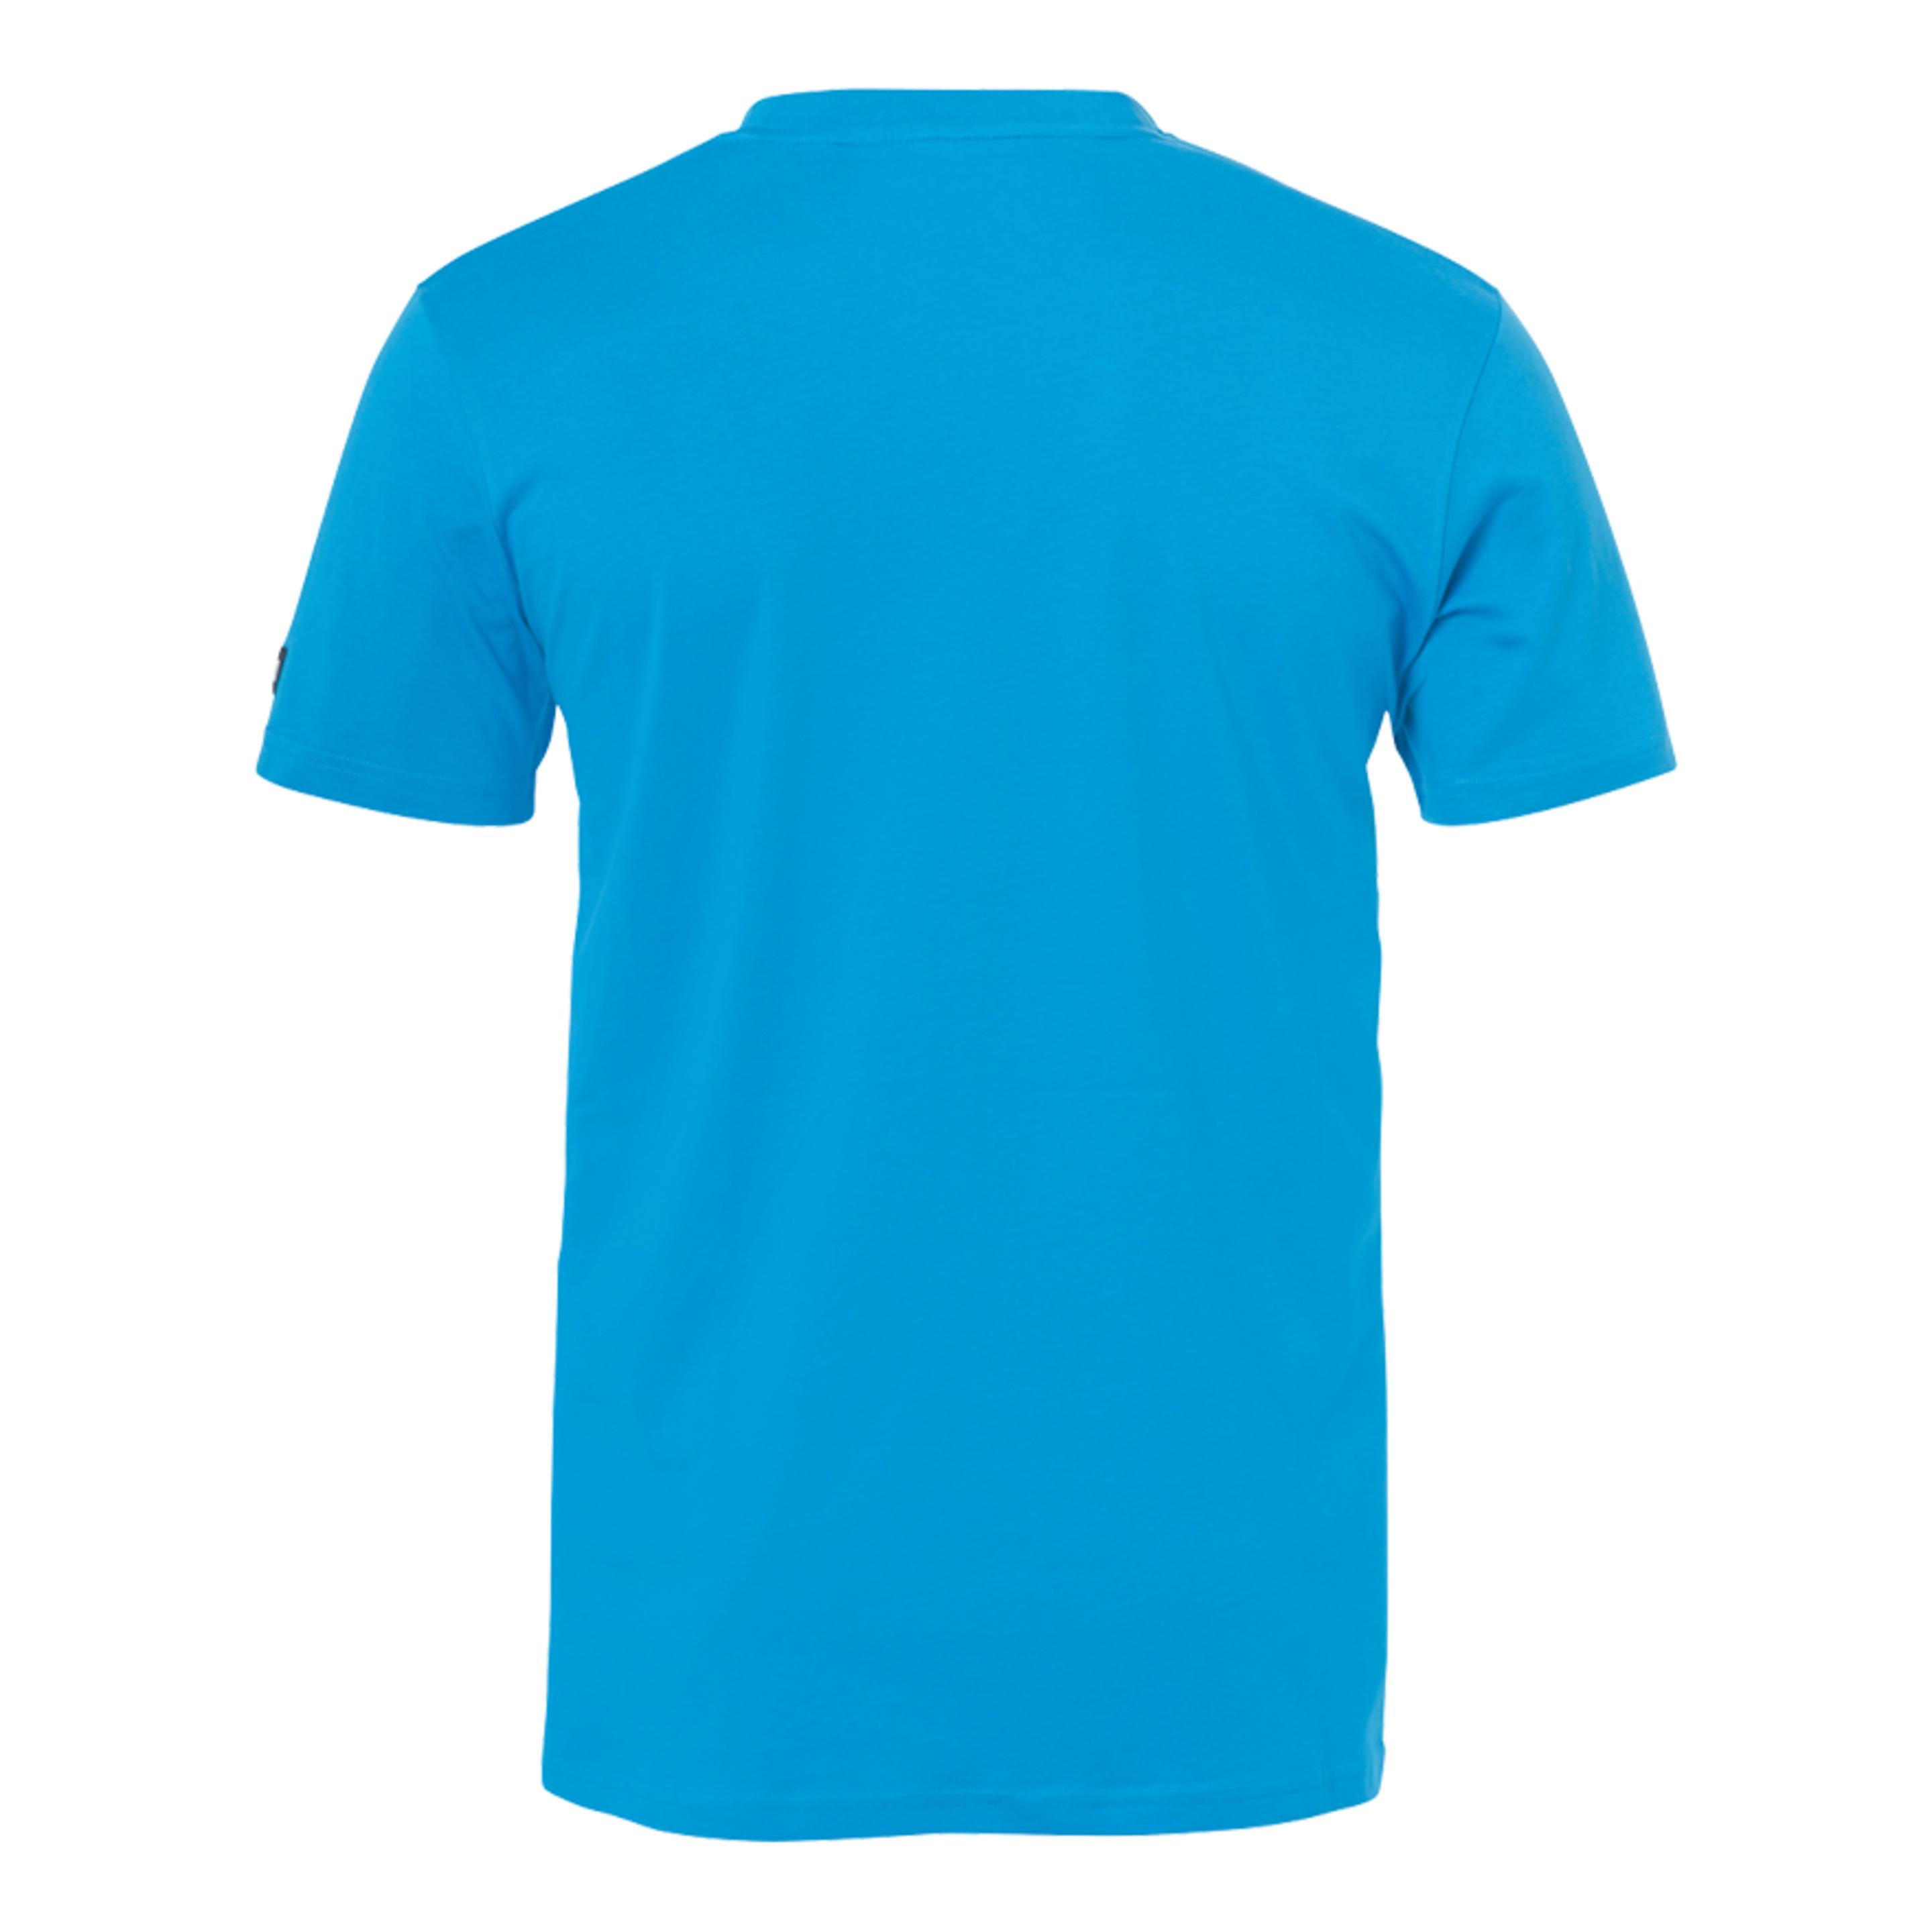 Promo Camiseta Kempa Azul Kempa - azul - Promo Camiseta Kempa Azul Kempa  MKP